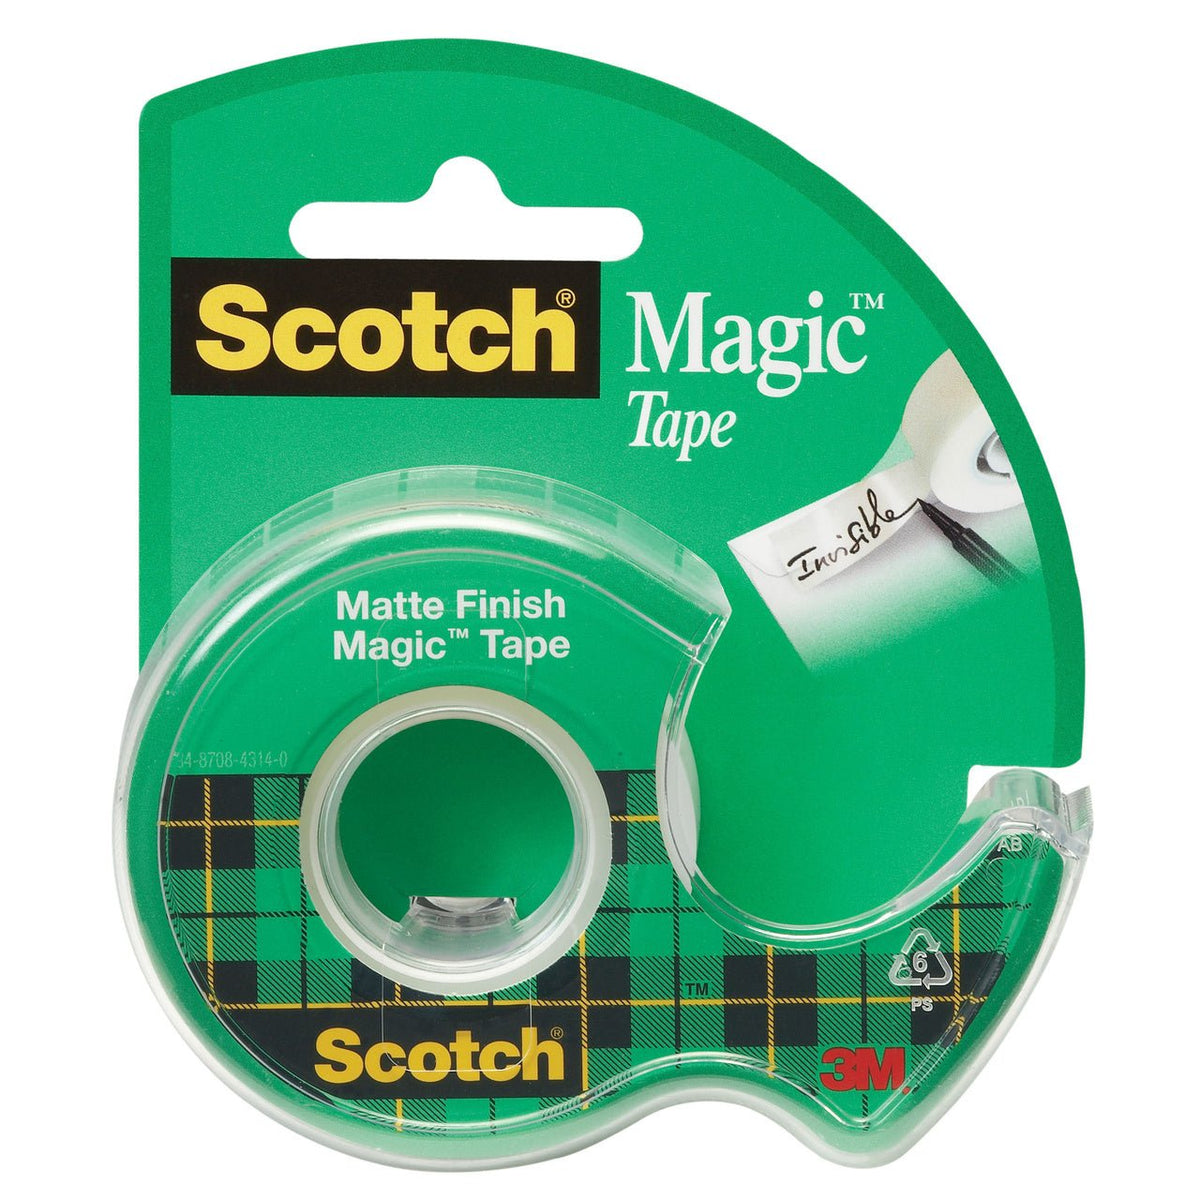 Scotch Magic Tape 1/2x20 yards - merriartist.com